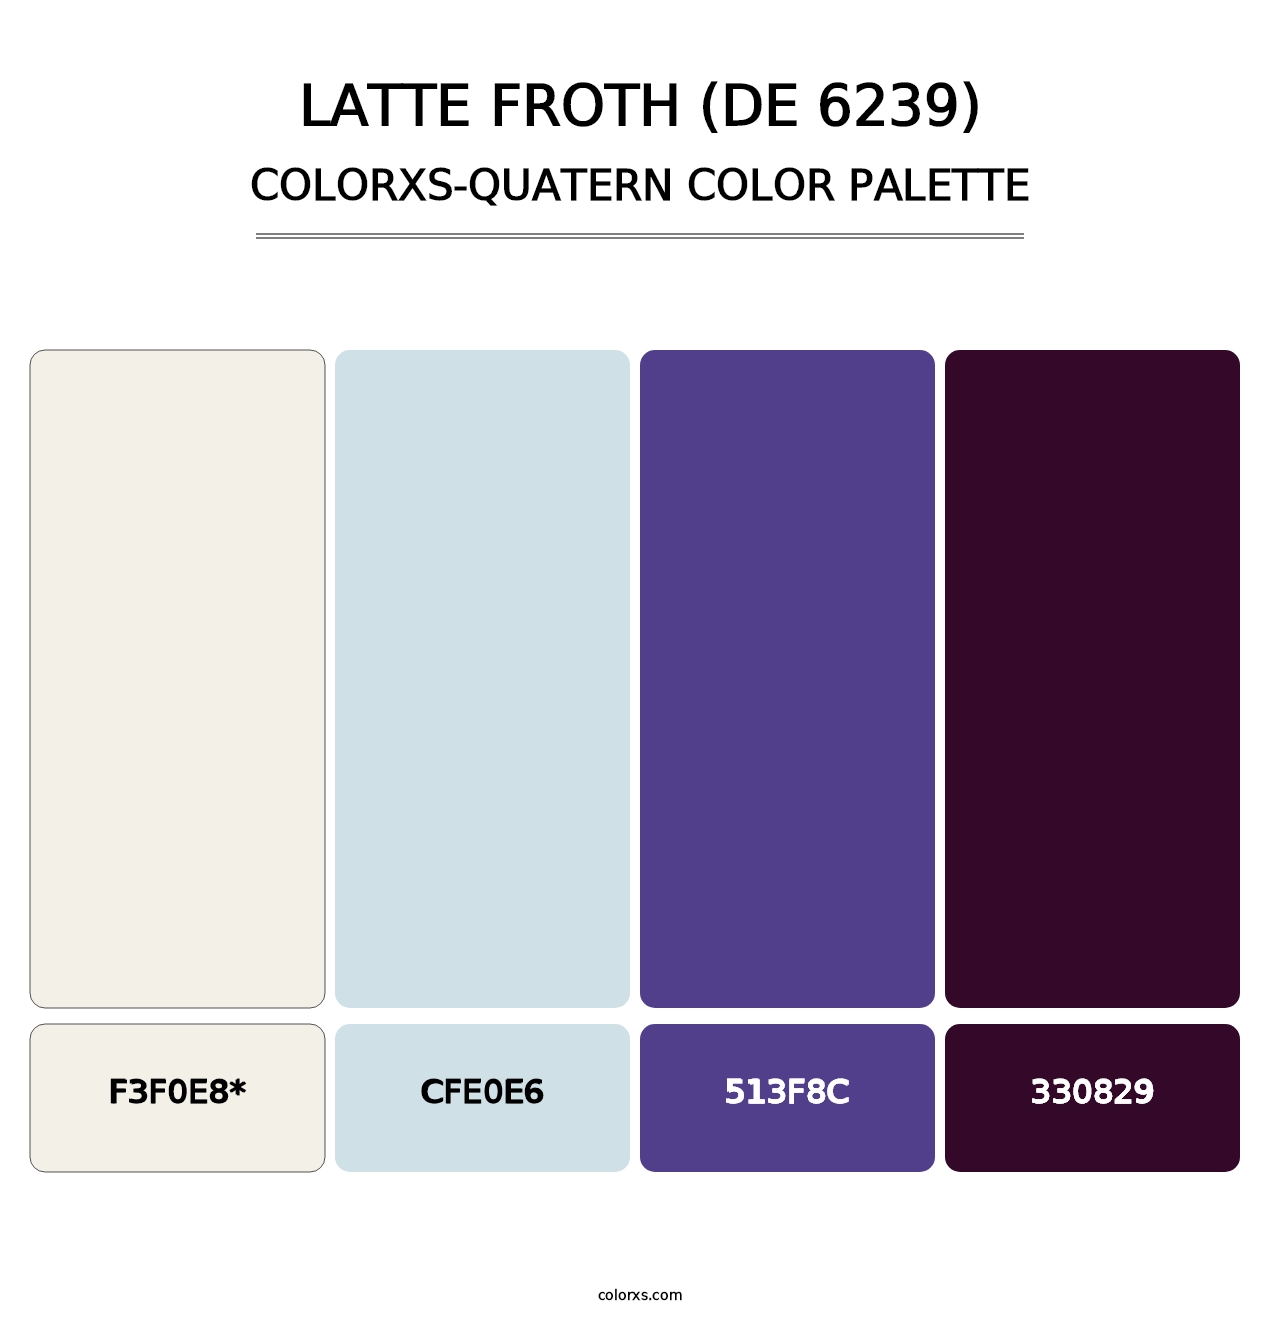 Latte Froth (DE 6239) - Colorxs Quatern Palette